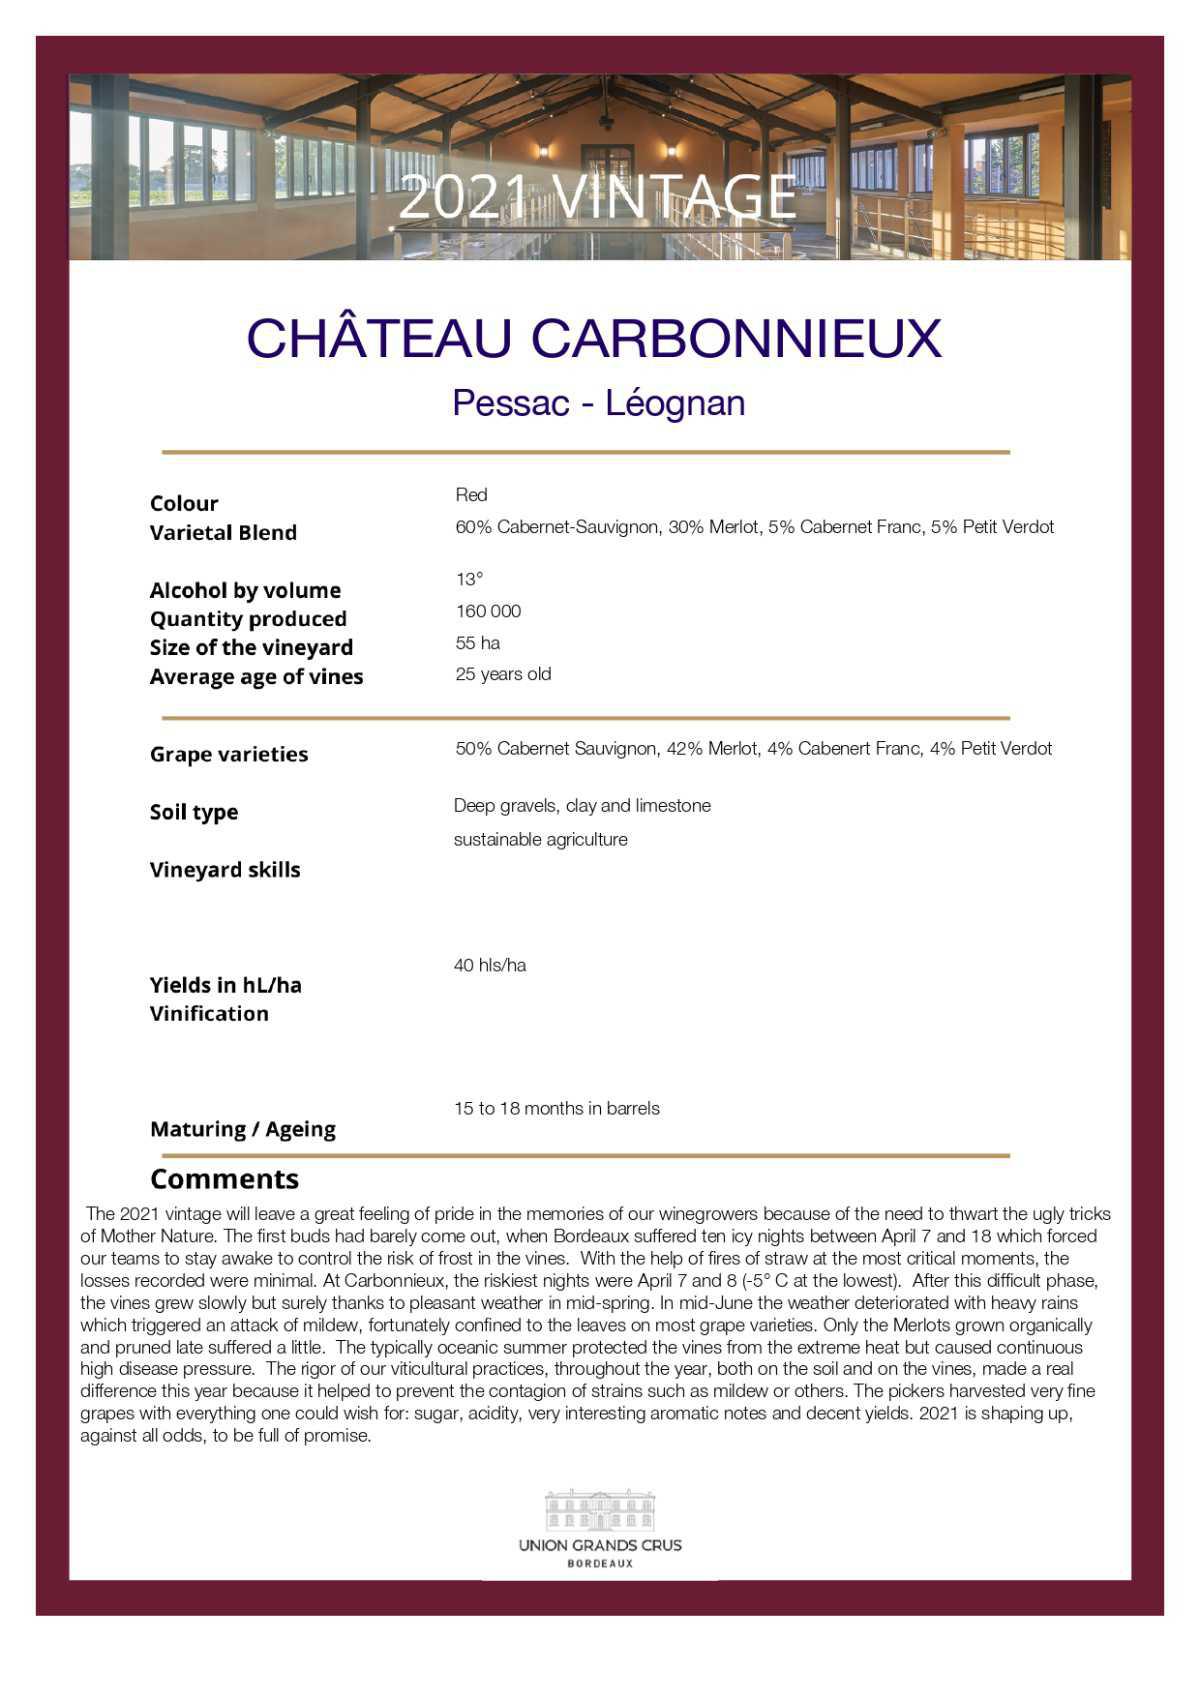 Château Carbonnieux - Red